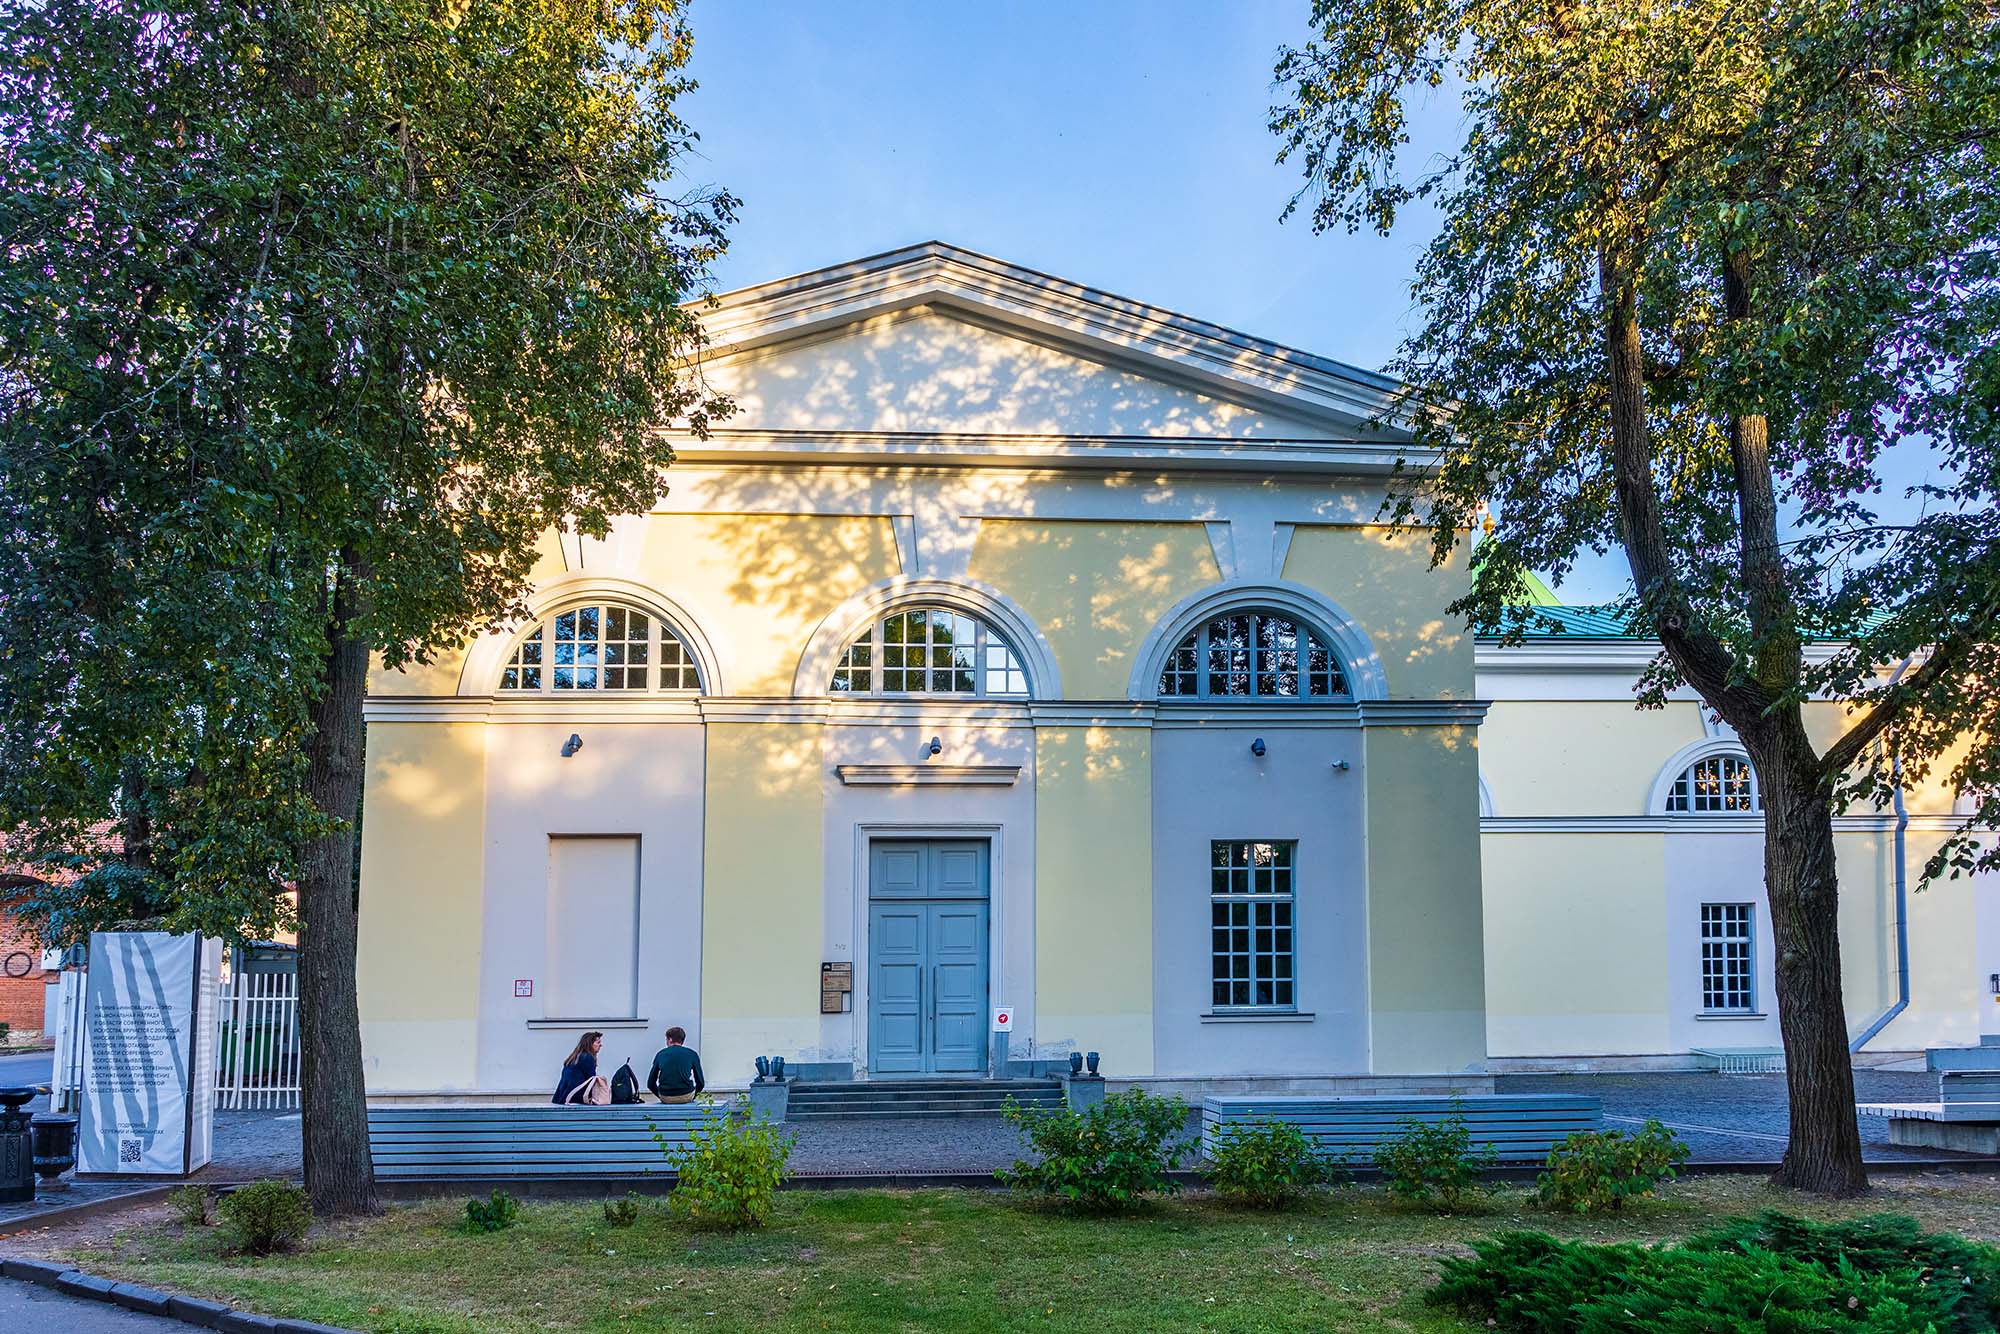 Фестиваль текстов об искусстве «Вазари» пройдет в Нижнем Новгороде с 24 по 26 сентября